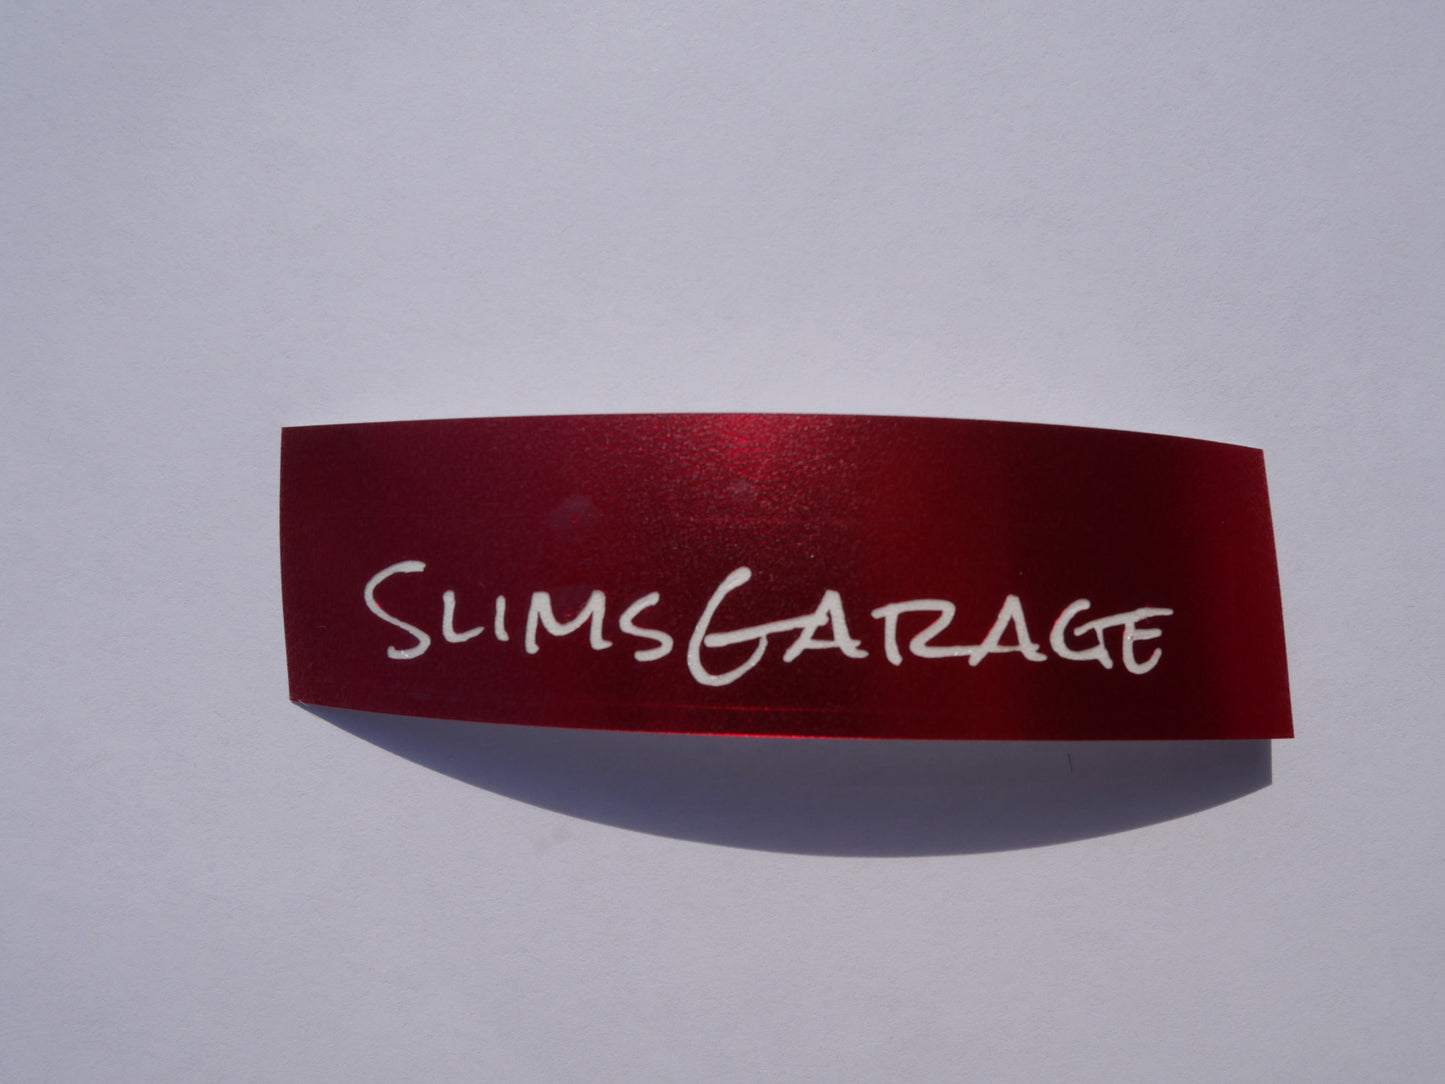 Slimsgarage Sticker